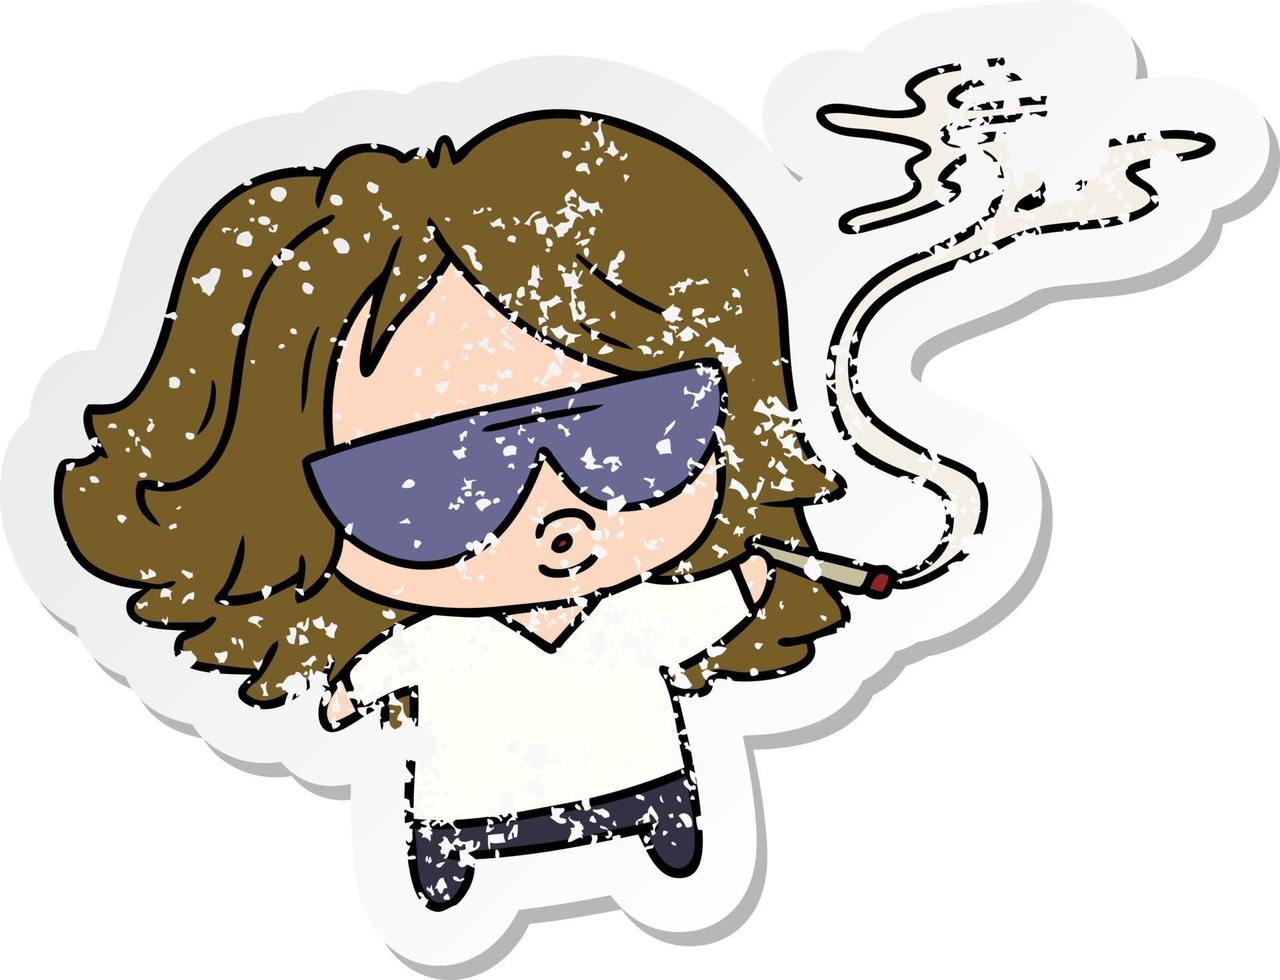 distressed sticker cartoon cute kawaii smoking a joint vector